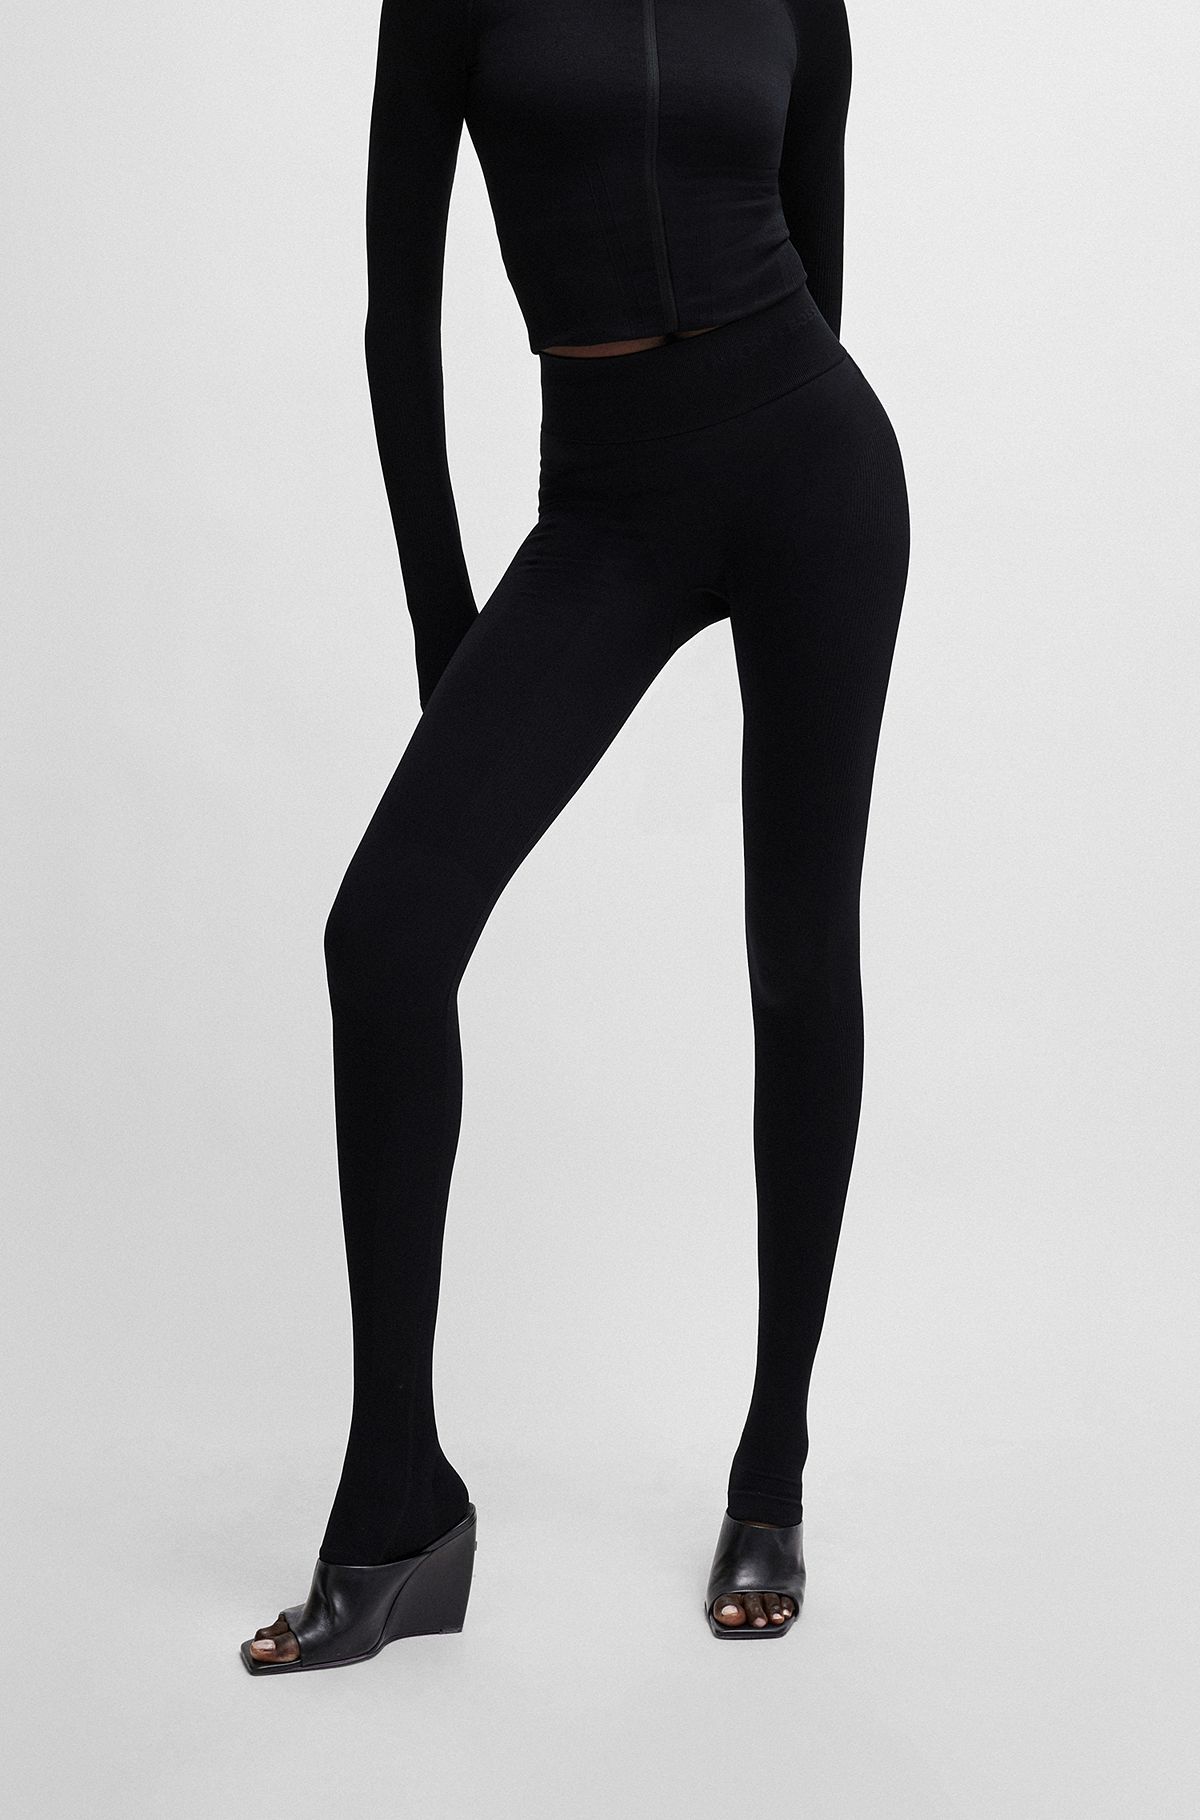 Legging NAOMI x BOSS en jersey stretch avec taille logotée, Noir